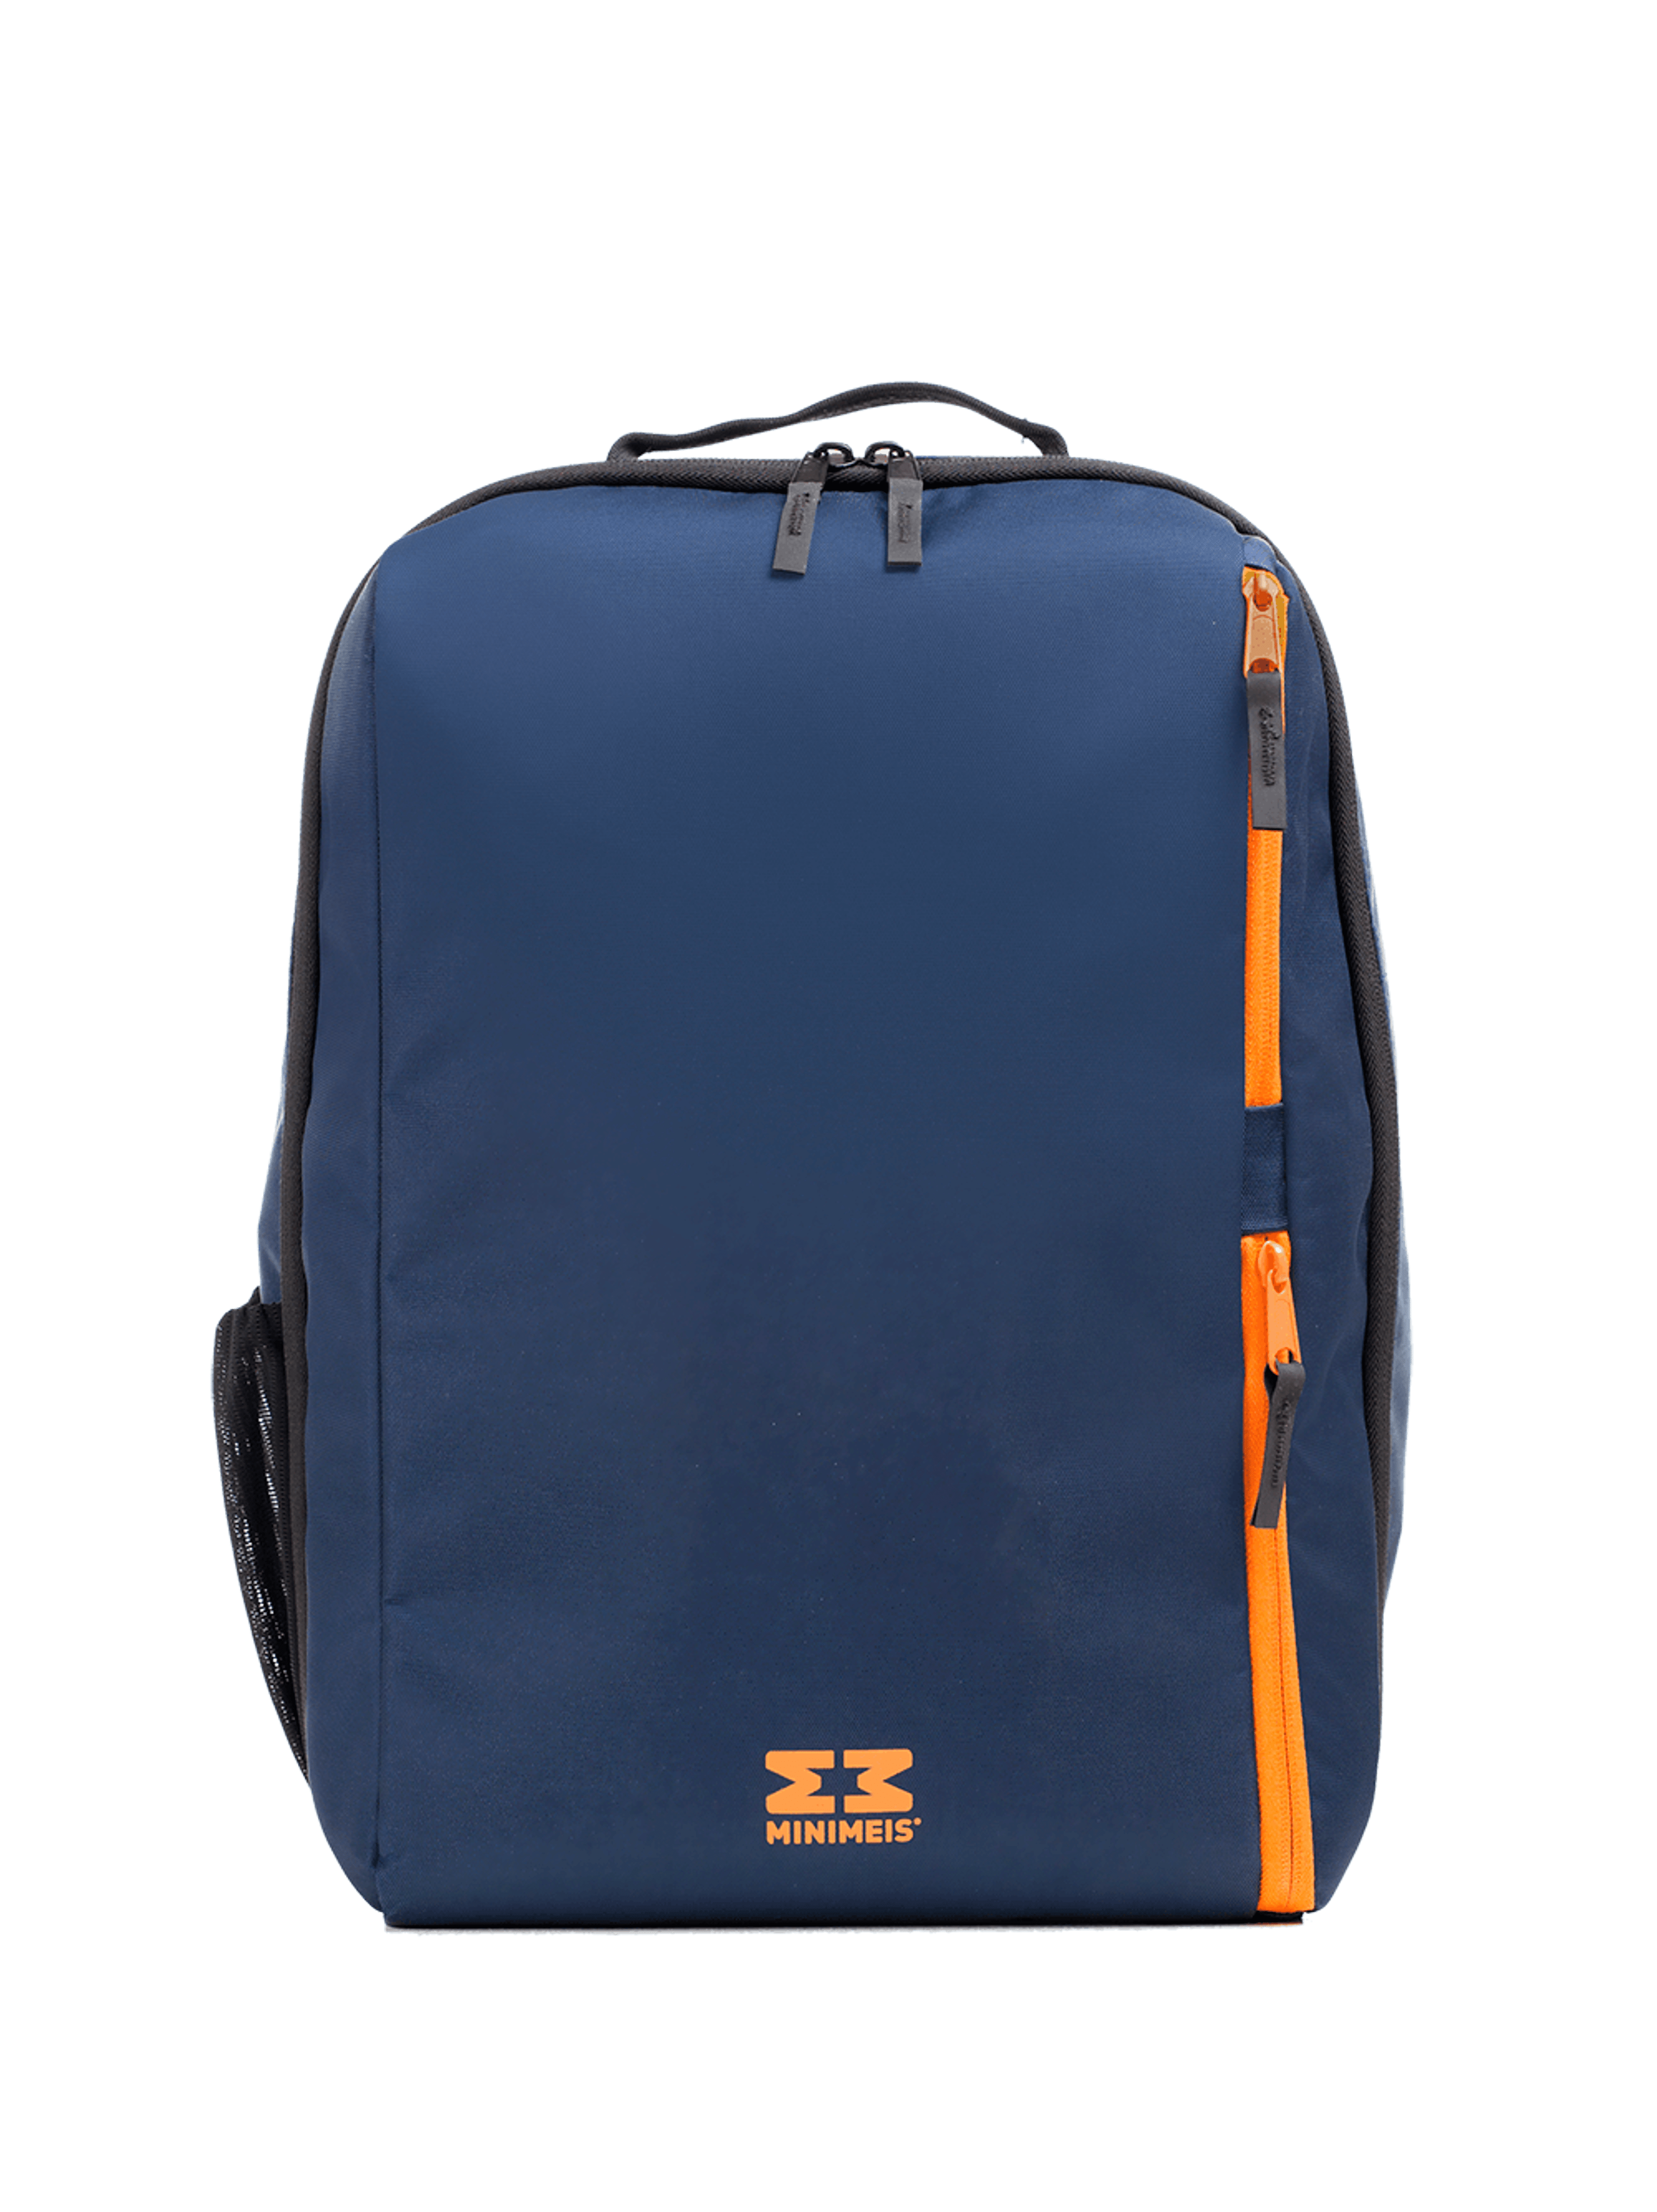 MiniMeis Backpack